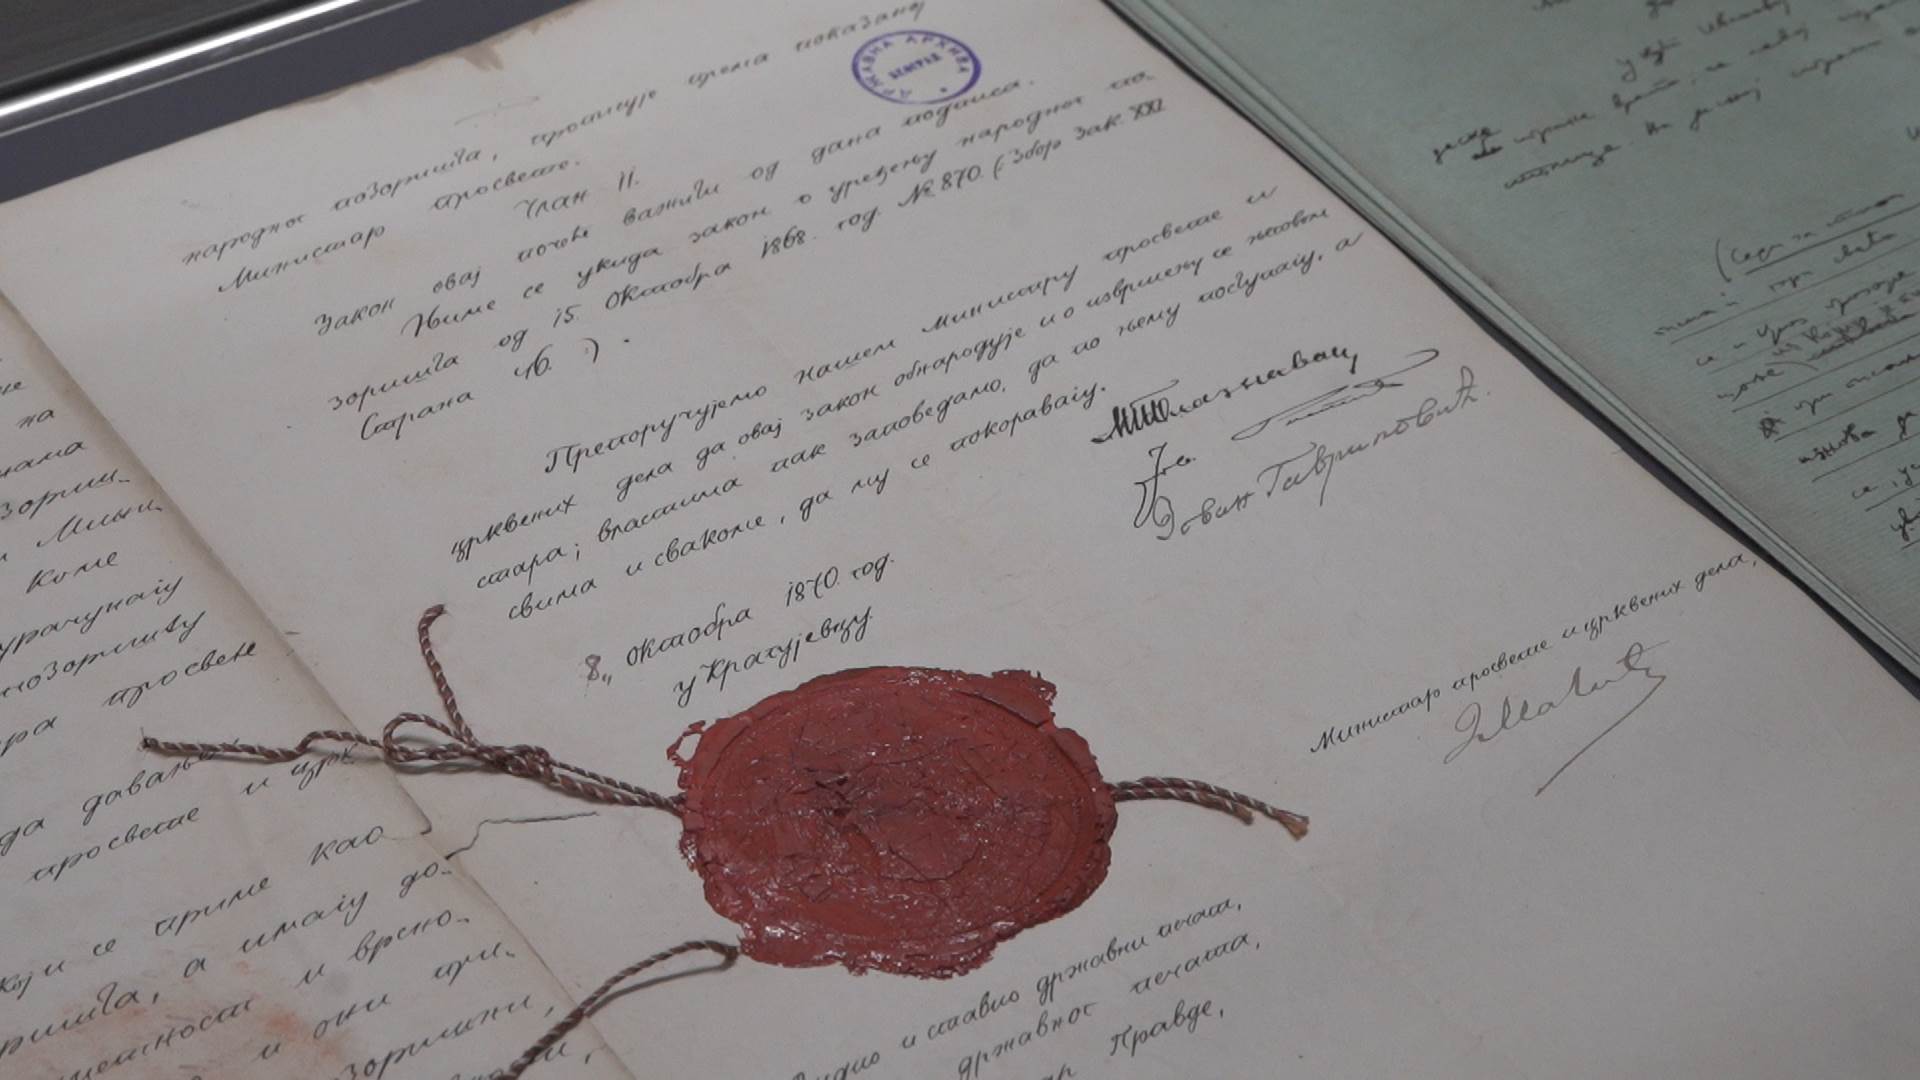  Državni arhiv Srbije izložba u Državnom arhivu srbije 